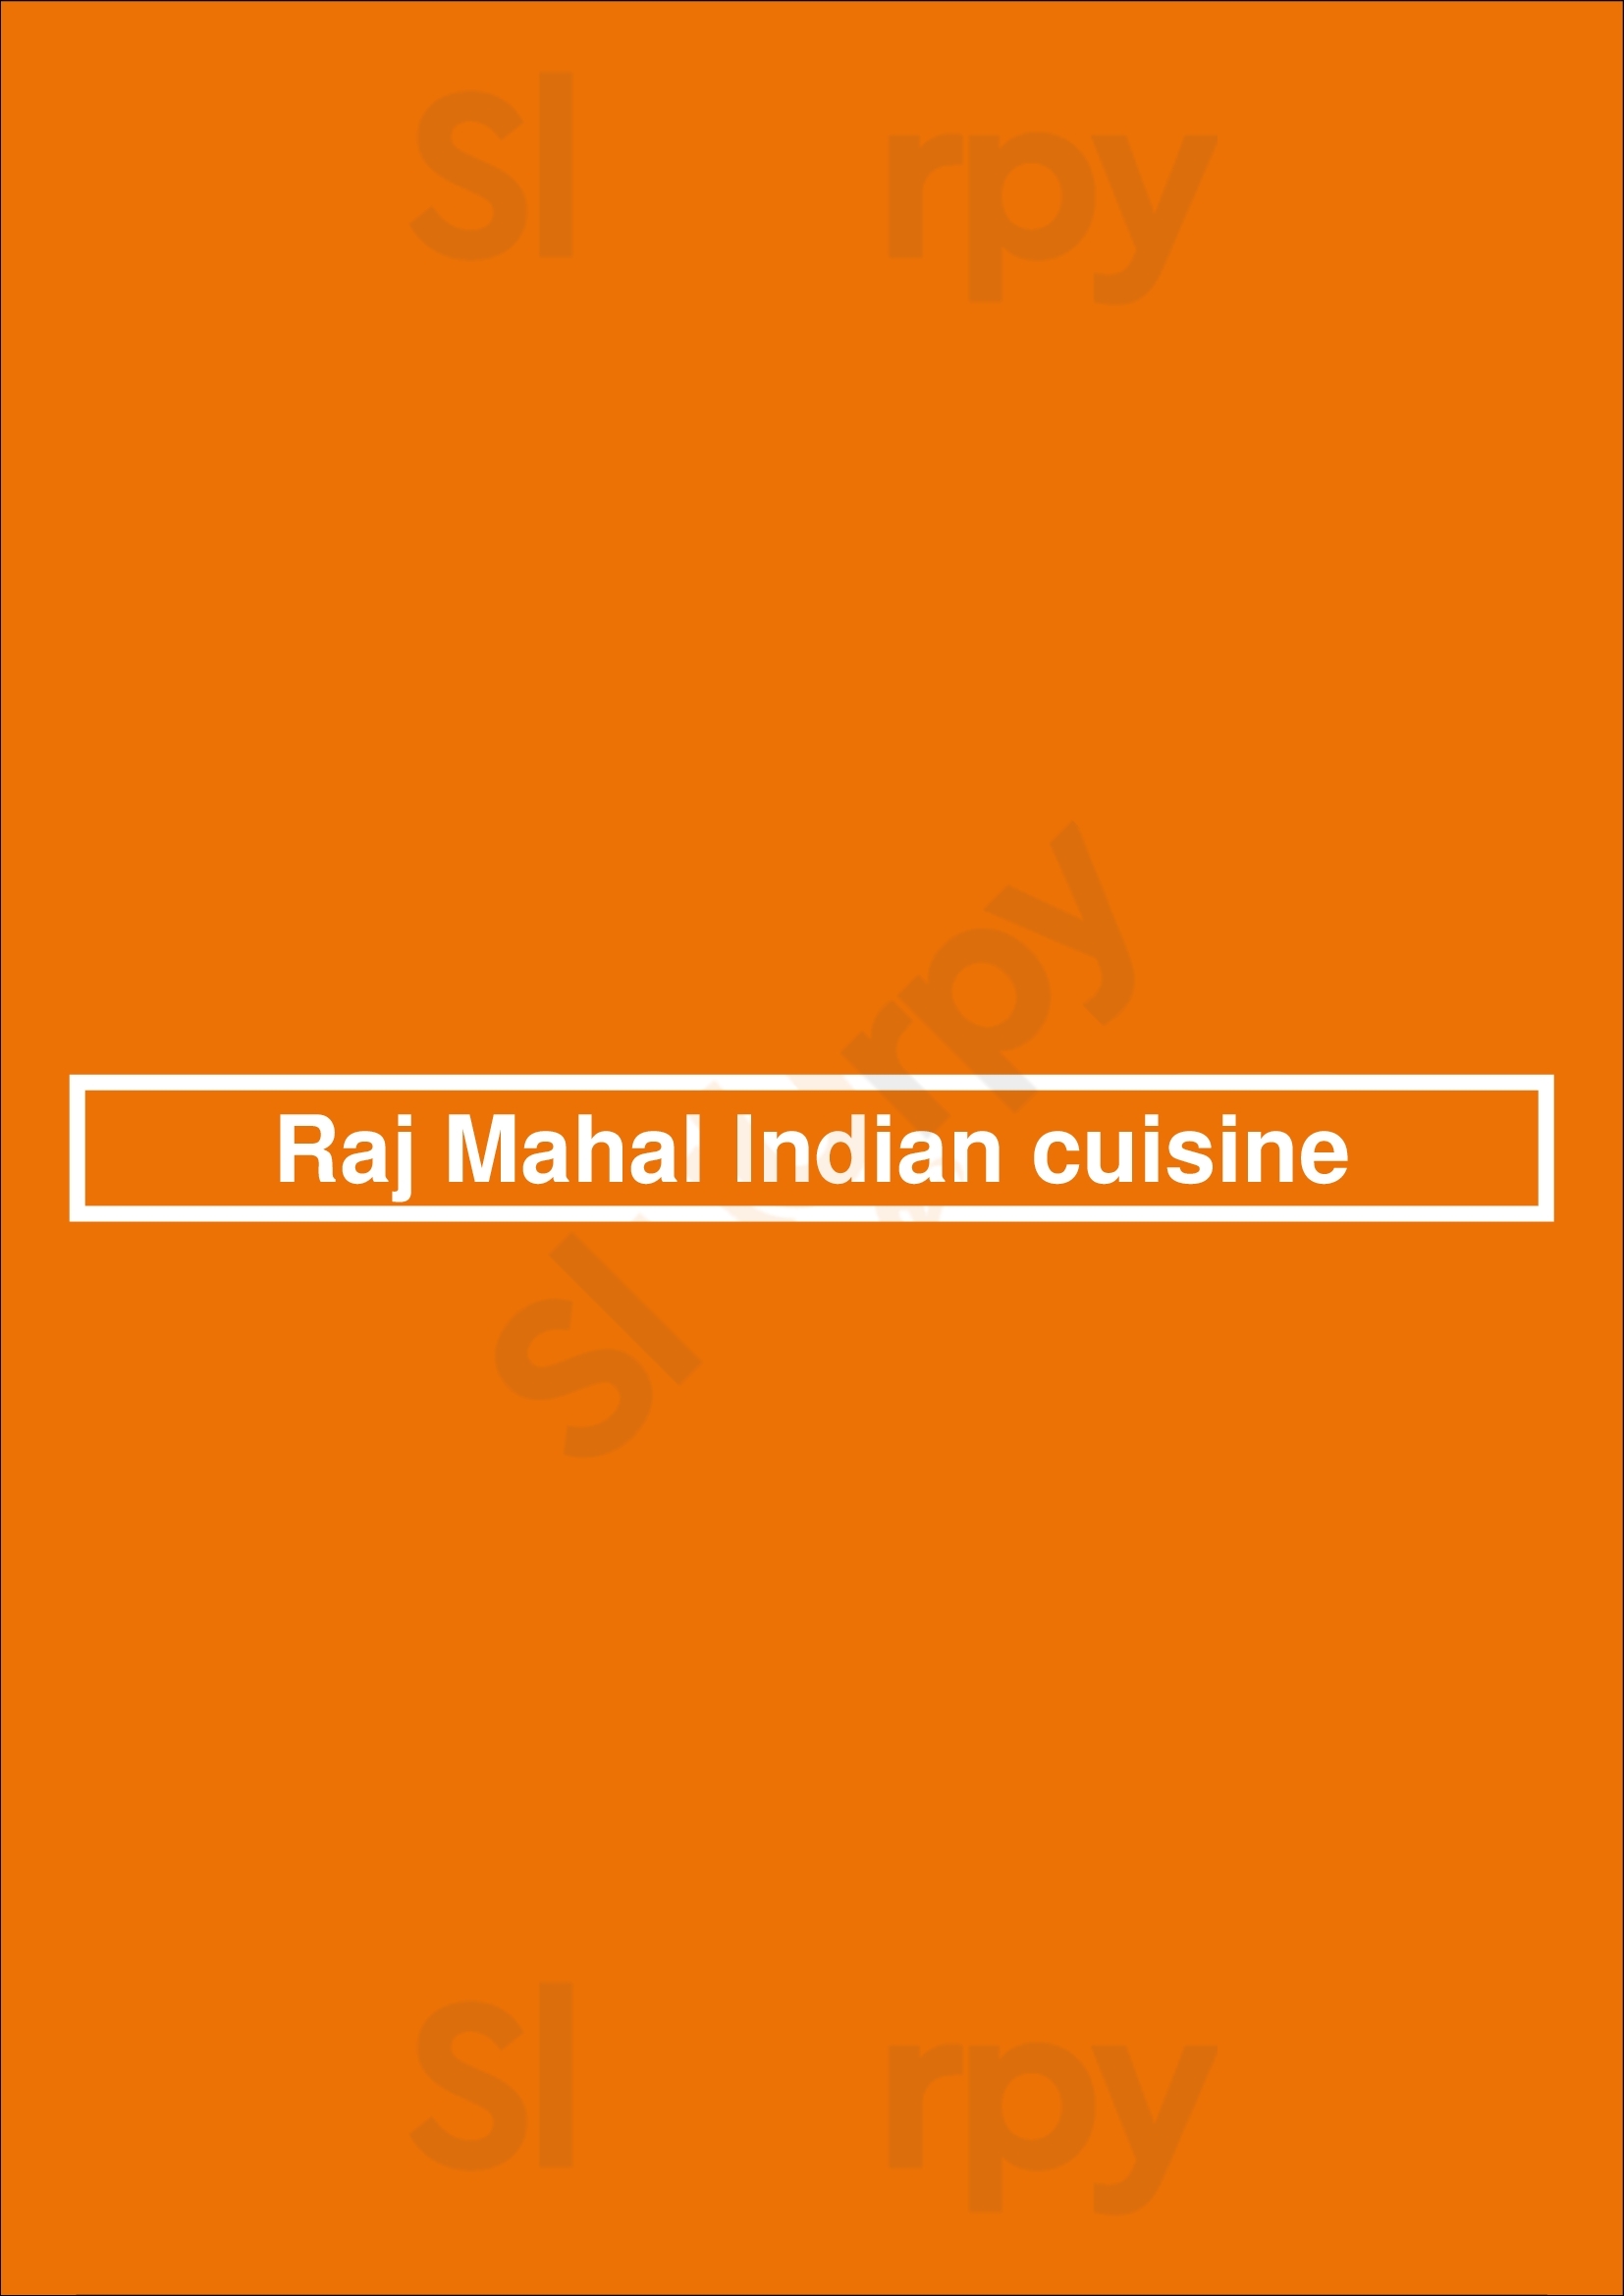 Raj Mahal Indian Cuisine Toronto Menu - 1